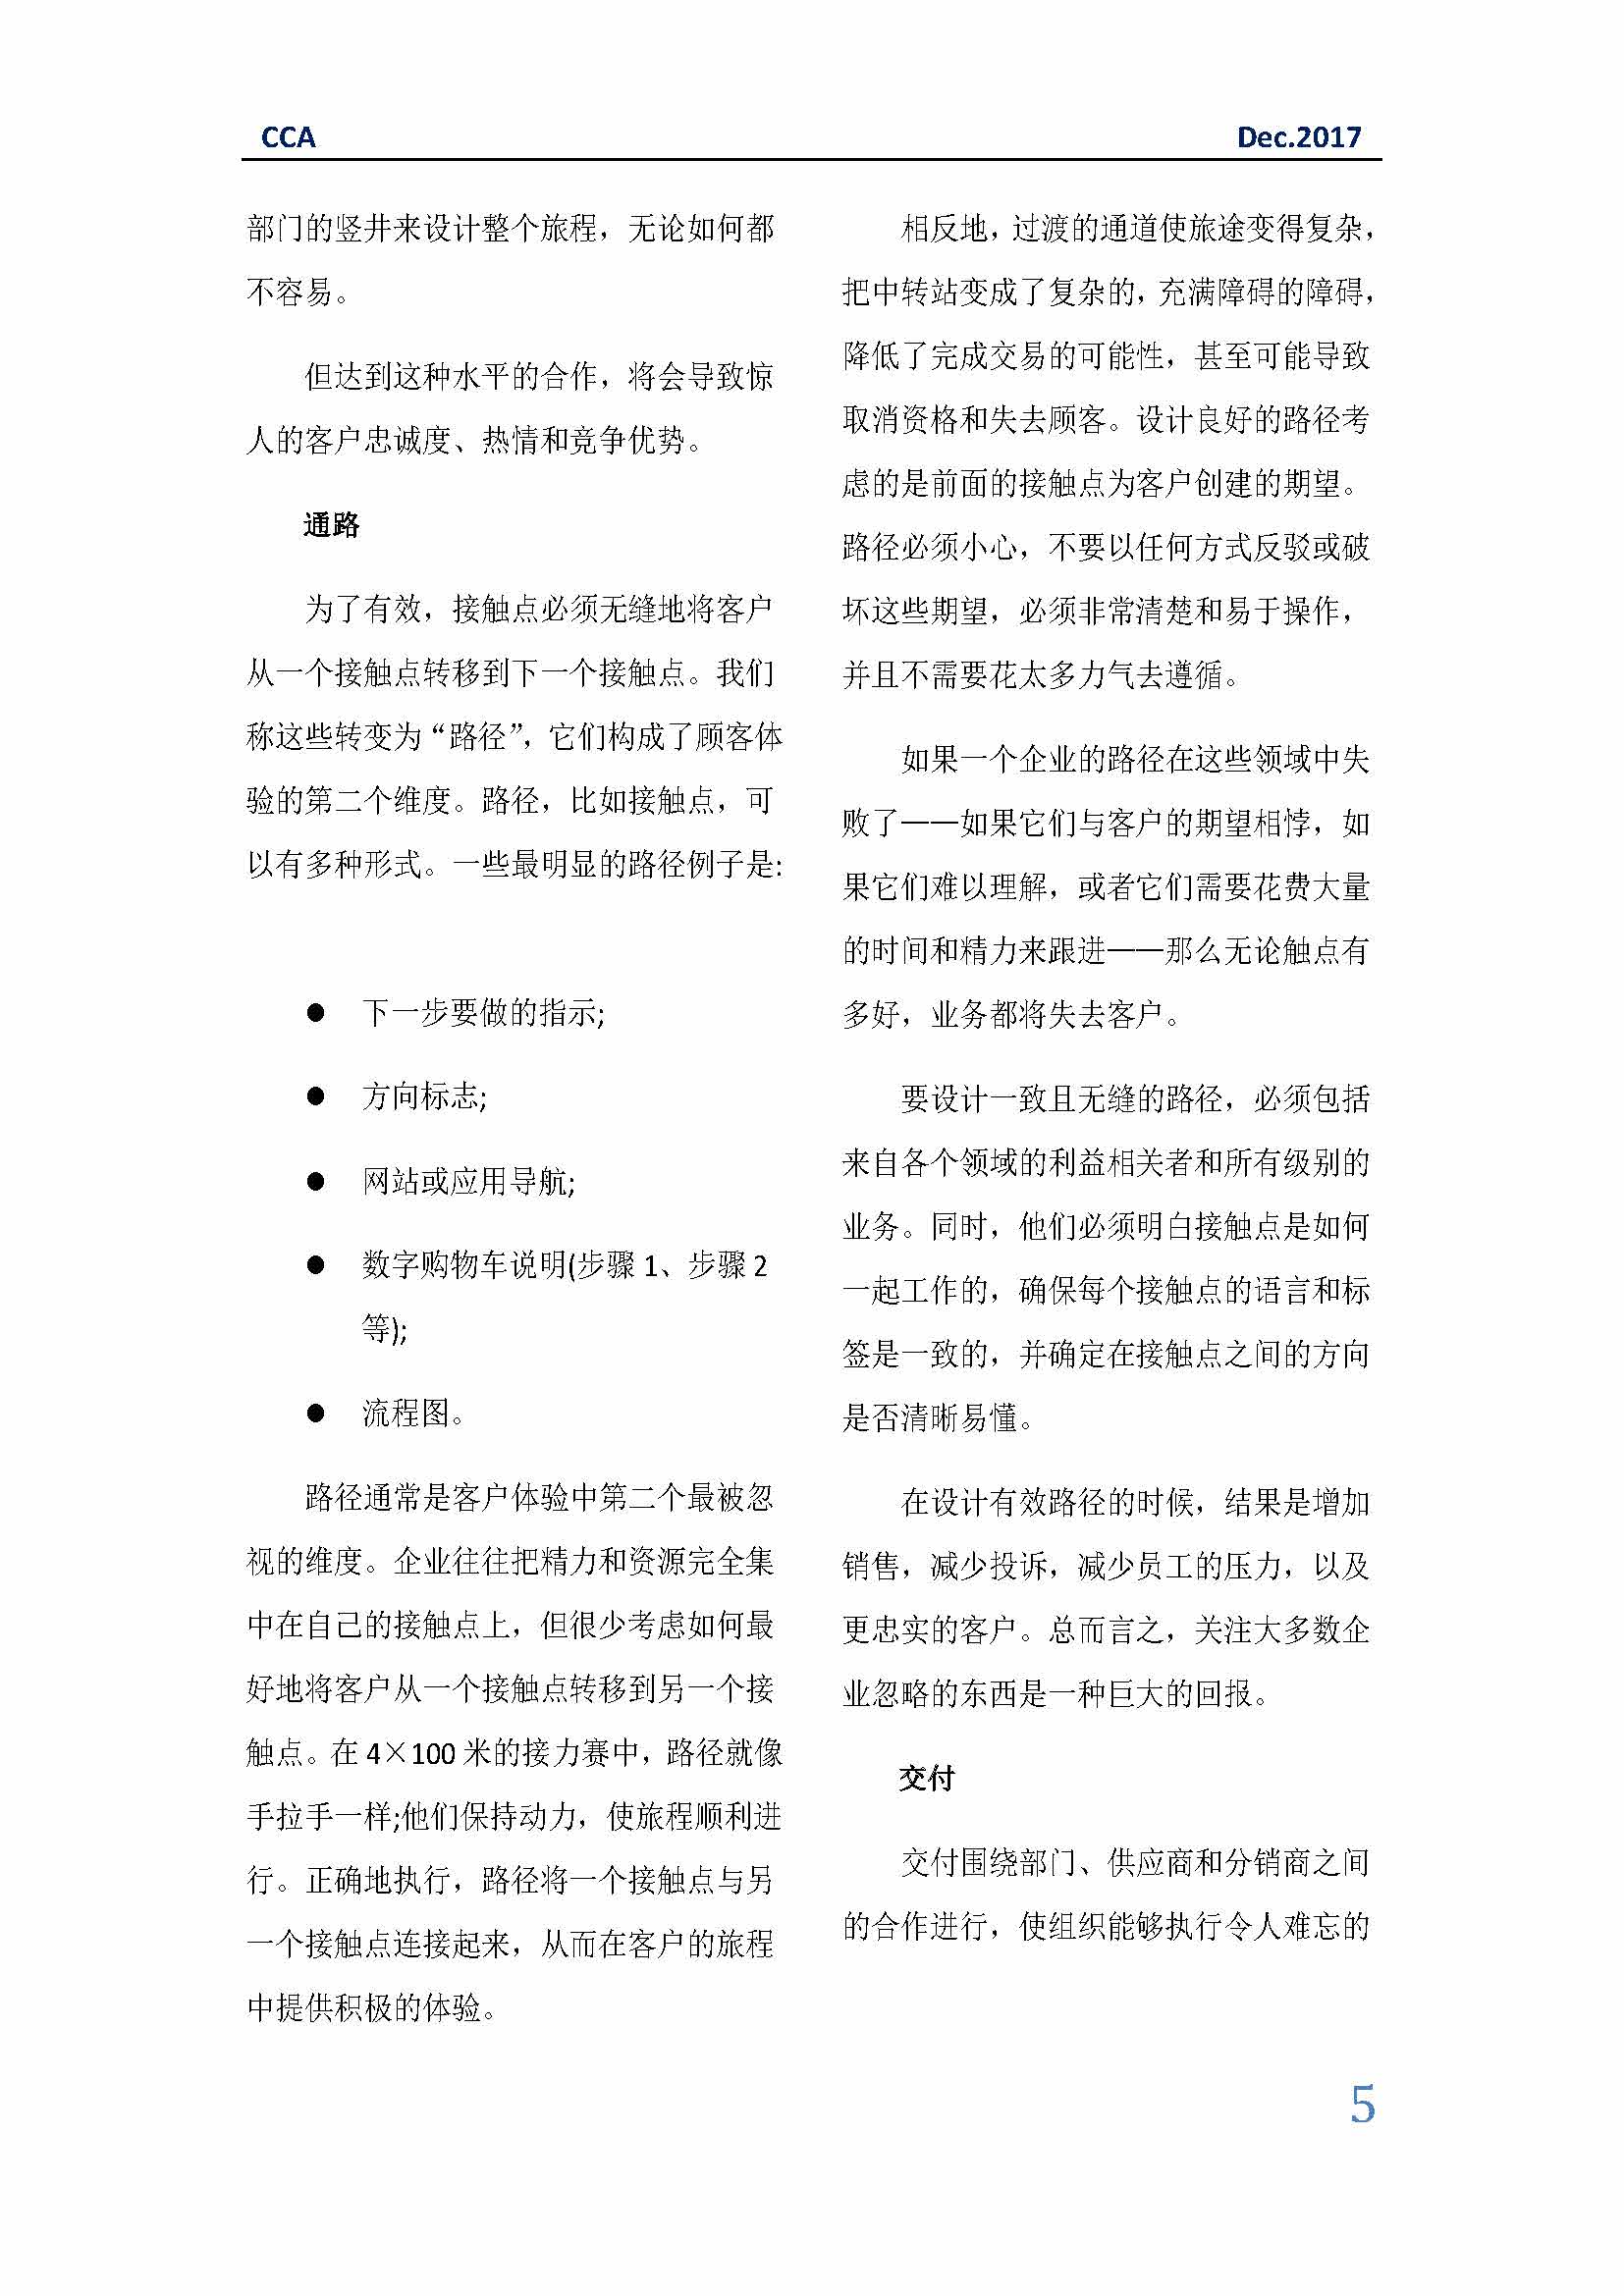 中国科技咨询协会国际快讯（第三十一期）_页面_05.jpg